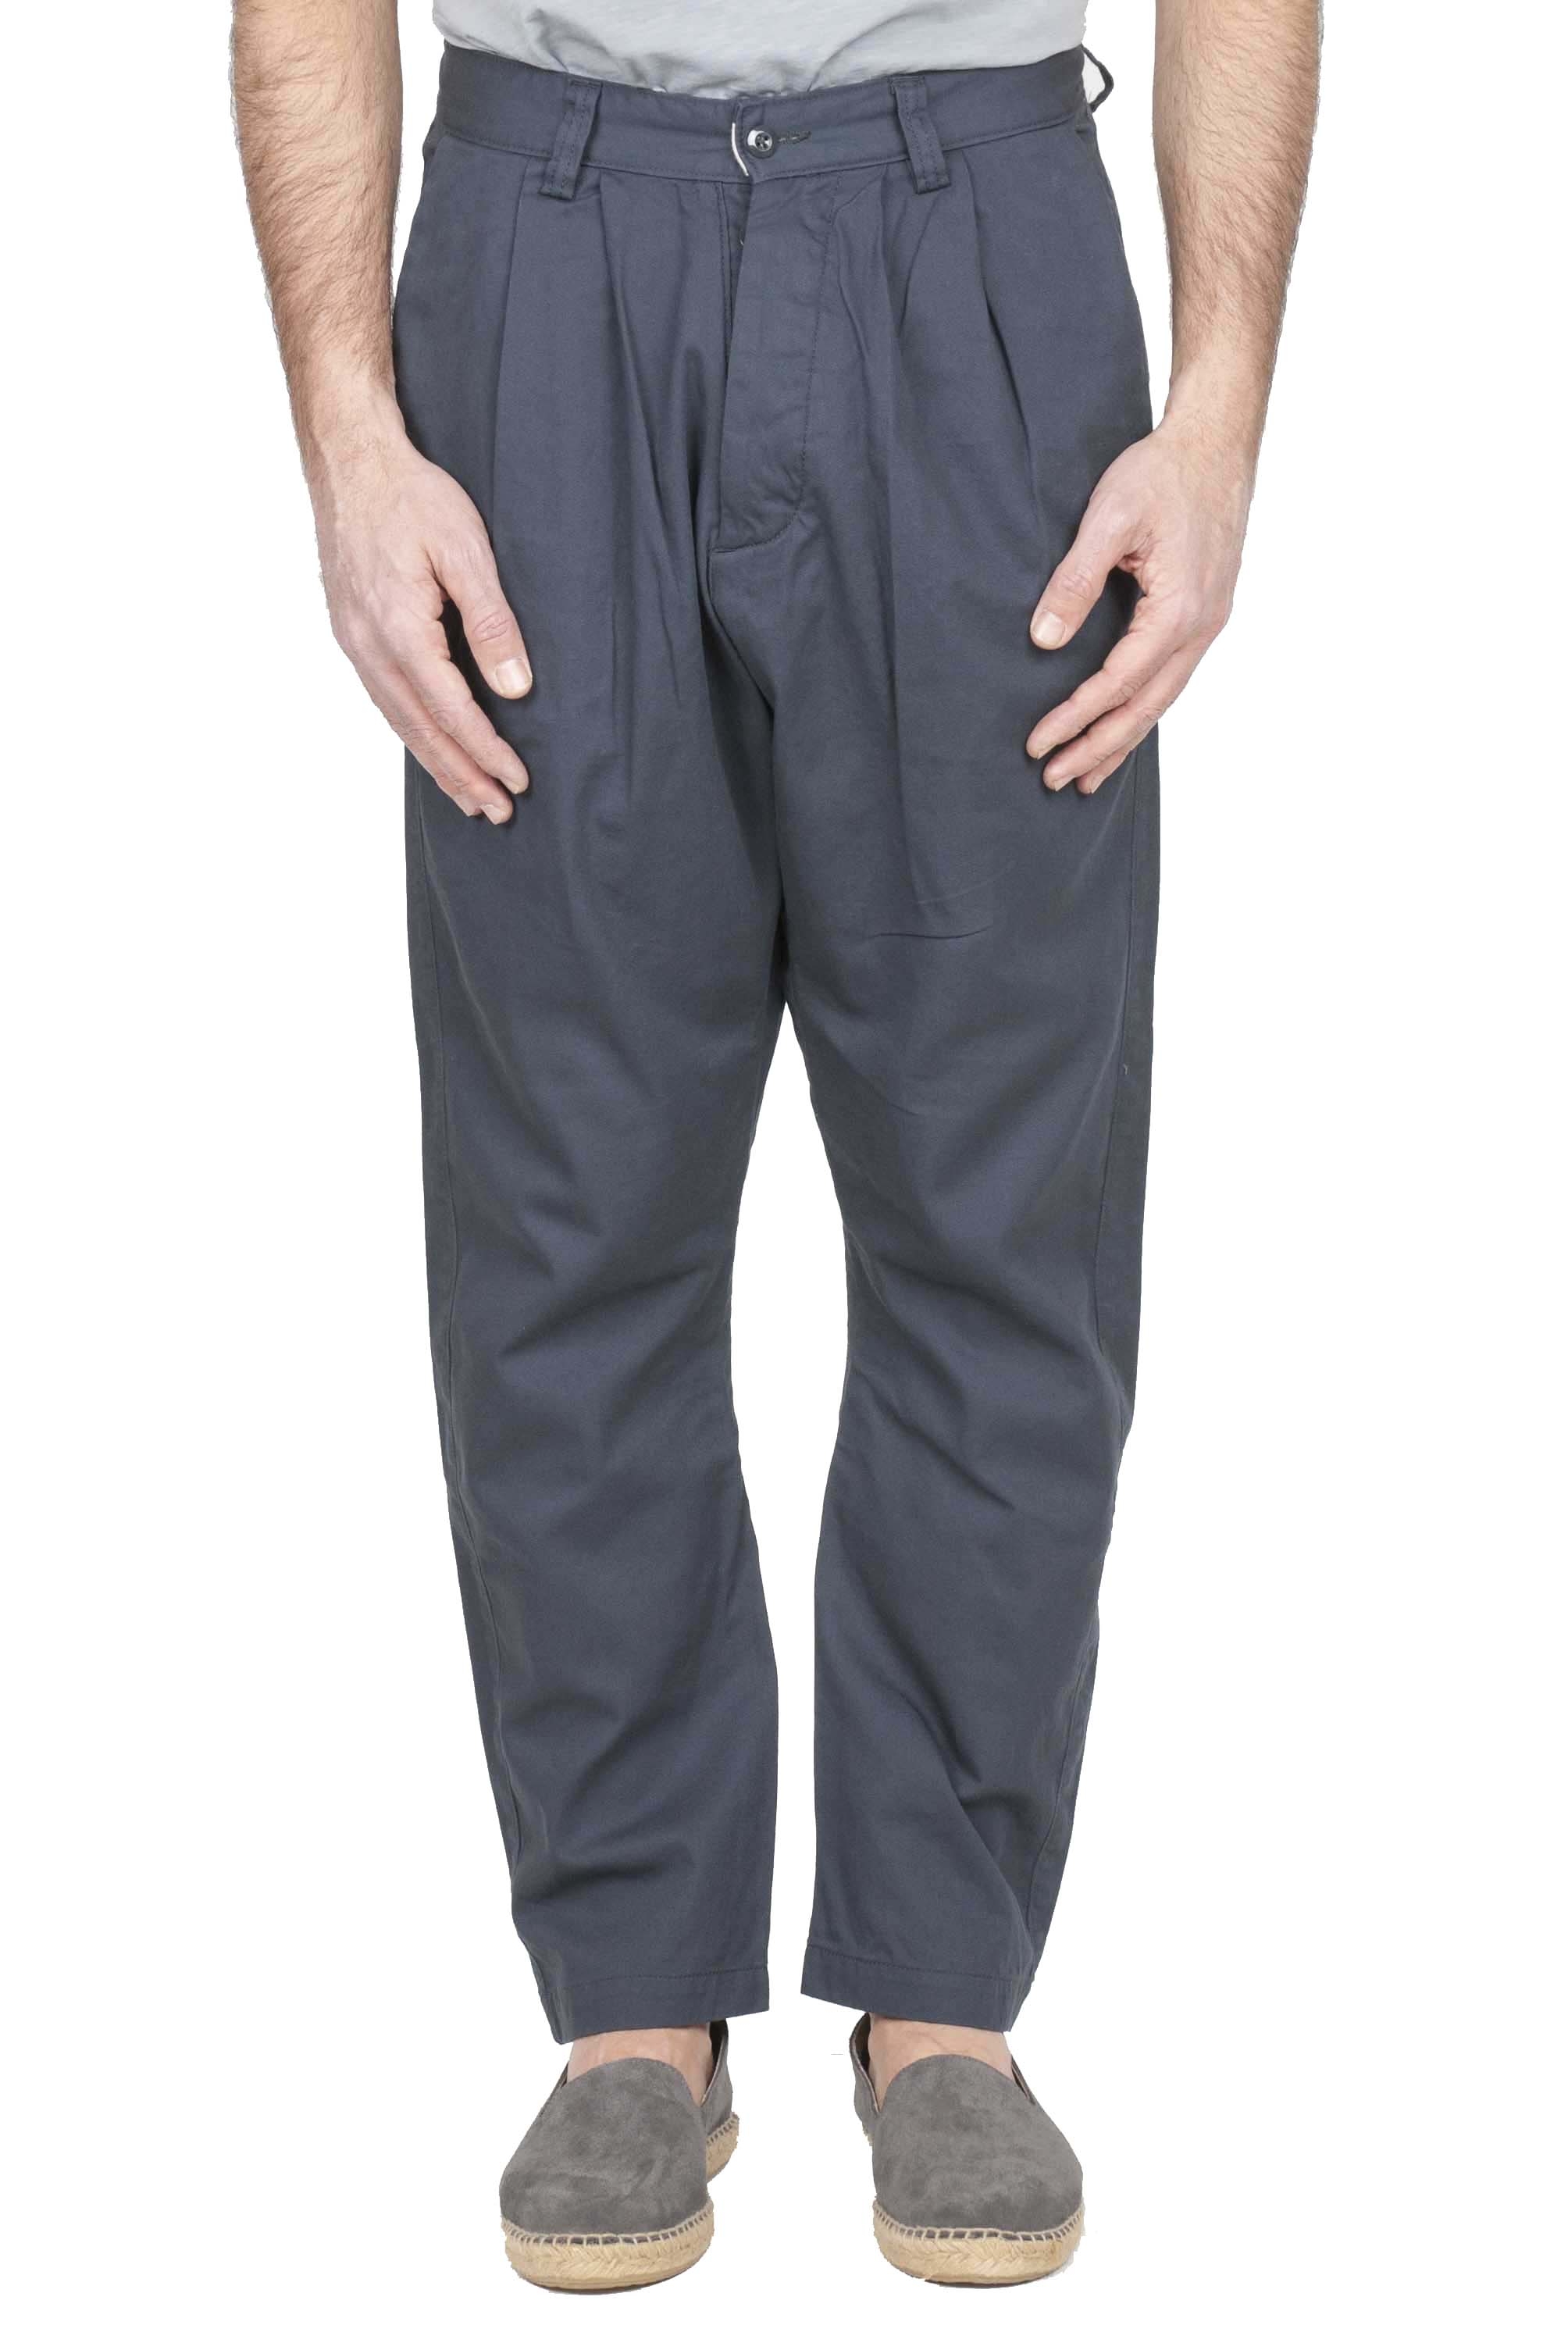 SBU 01135 Pantalones de trabajo de algodón 01